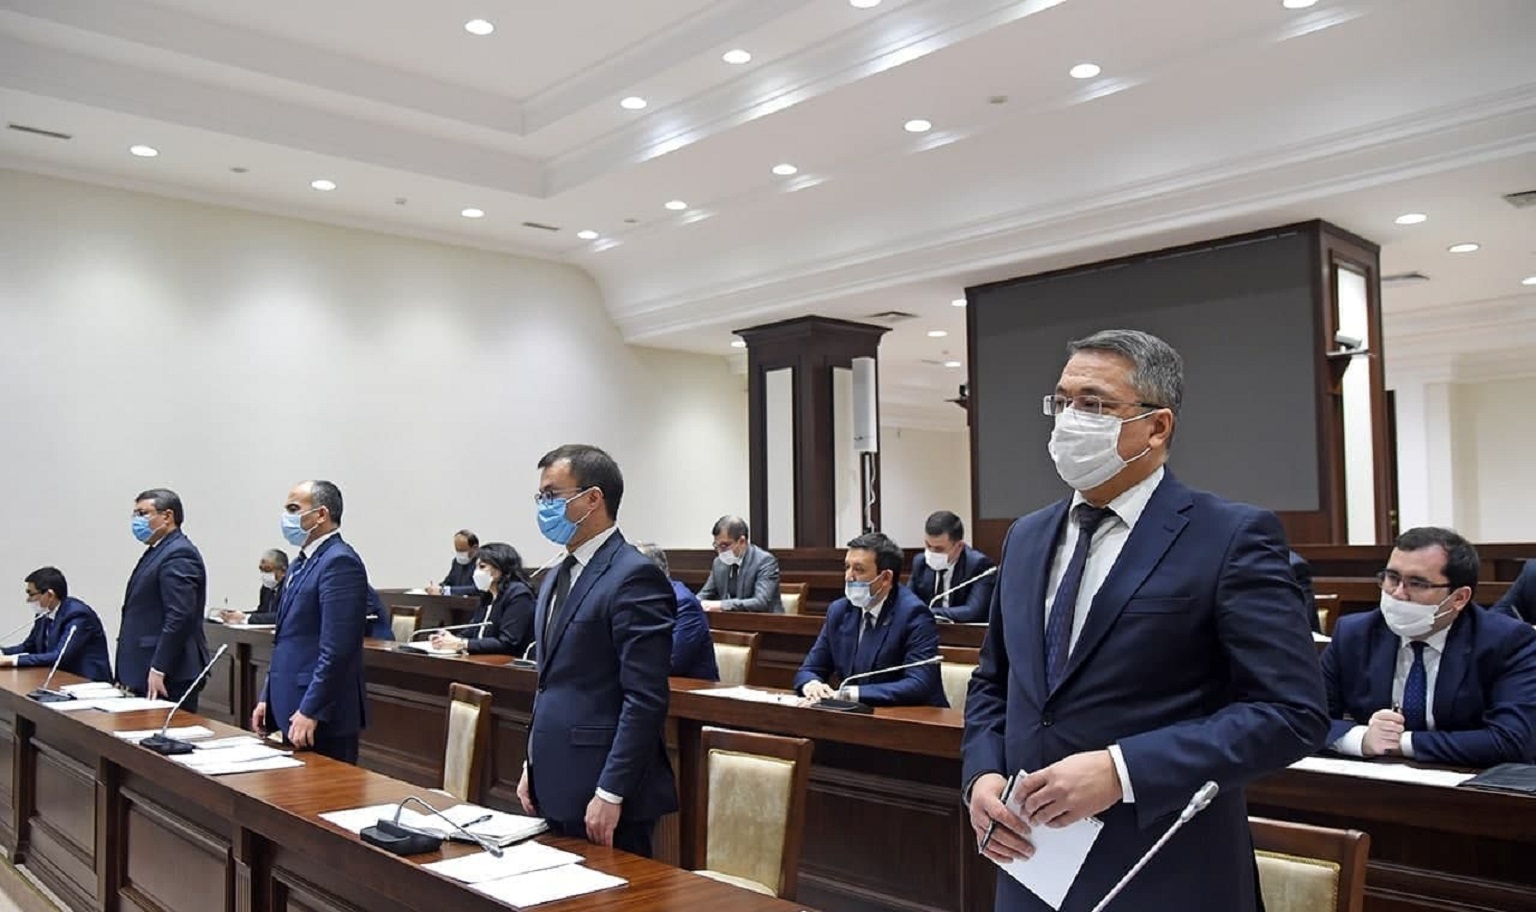 В Узбекистане министрам запретят «караулить» Ташкент и отправят работать в регионы по будням